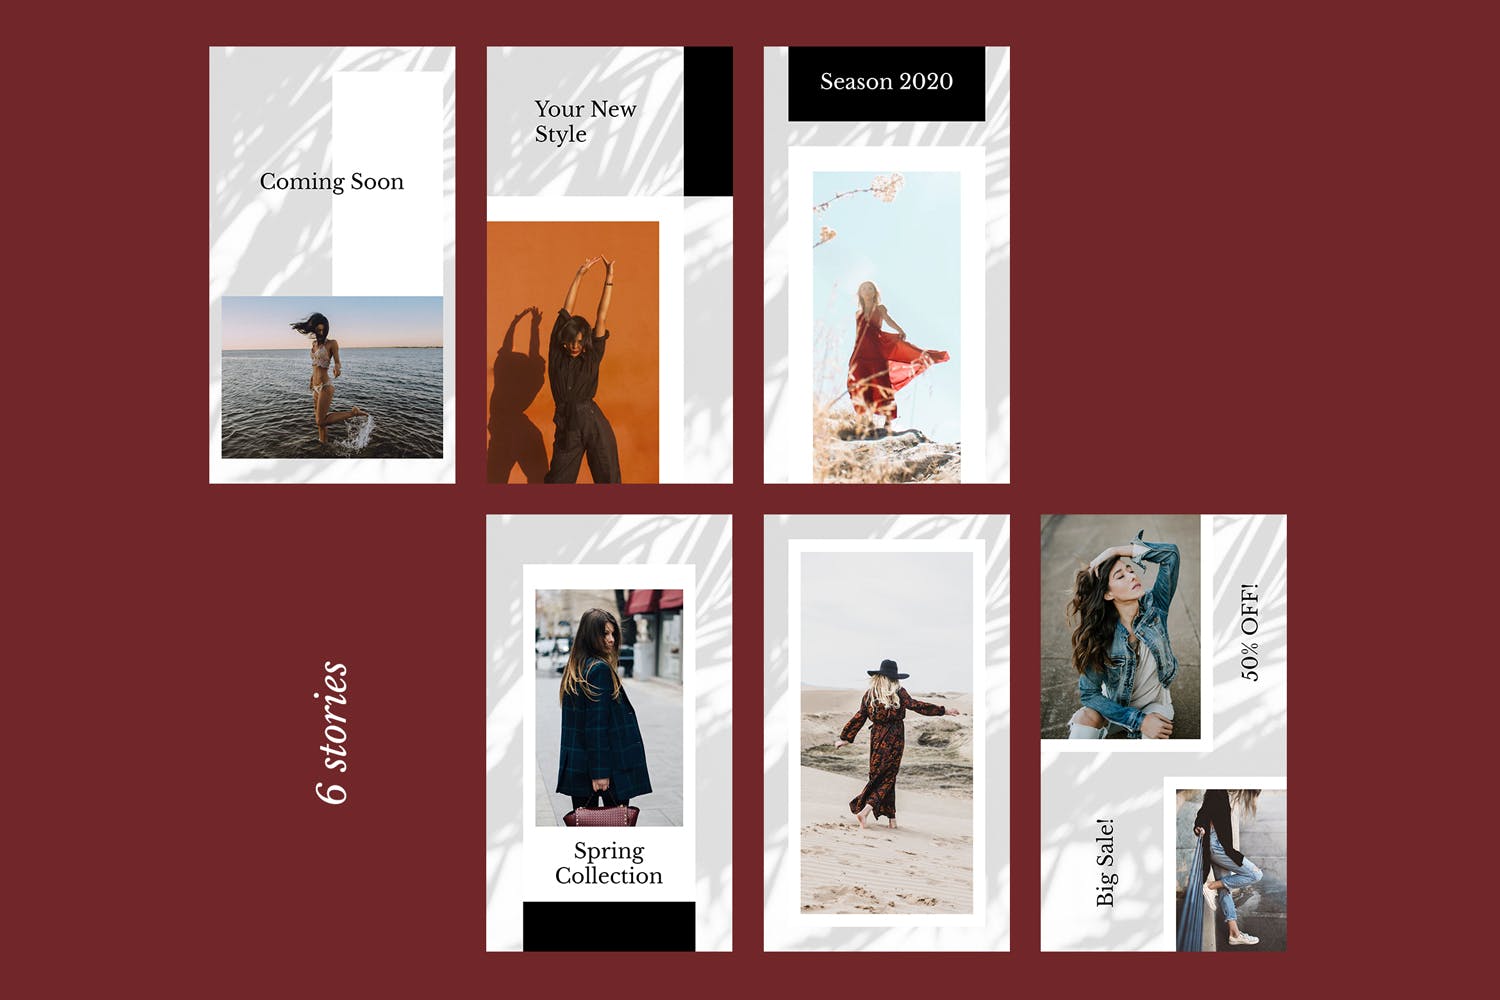 时装品牌产品展示Instagram社交贴图设计模板蚂蚁素材精选v52 Instagram Stories Kit (Vol.52)插图(1)